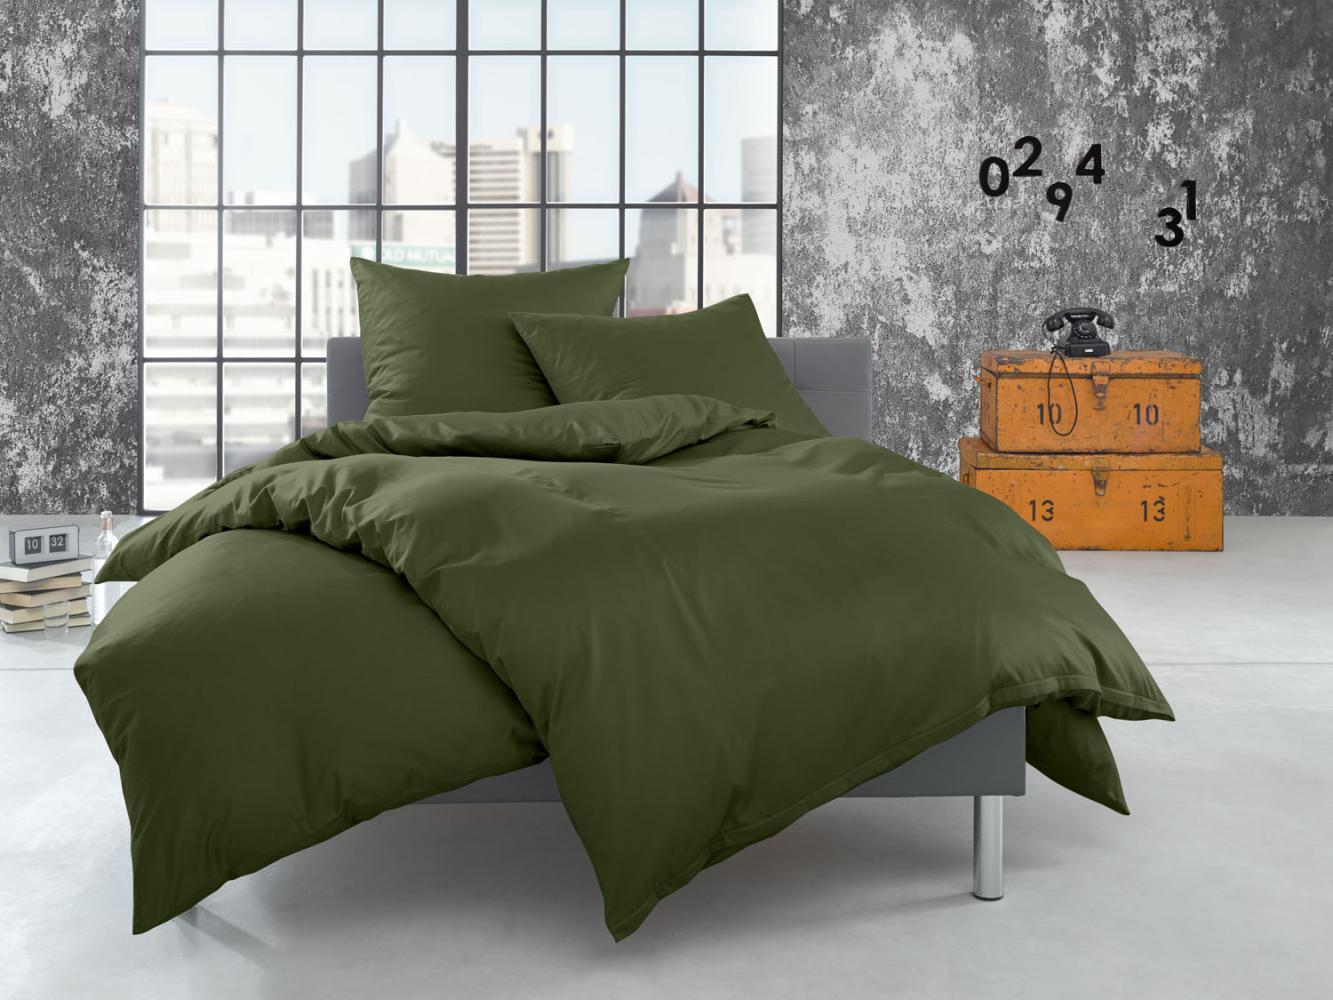 Bettwaesche-mit-Stil Flanell Bettwäsche uni / einfarbig dunkelgrün (oliv) Kissenbezug 40x80 cm Bild 1